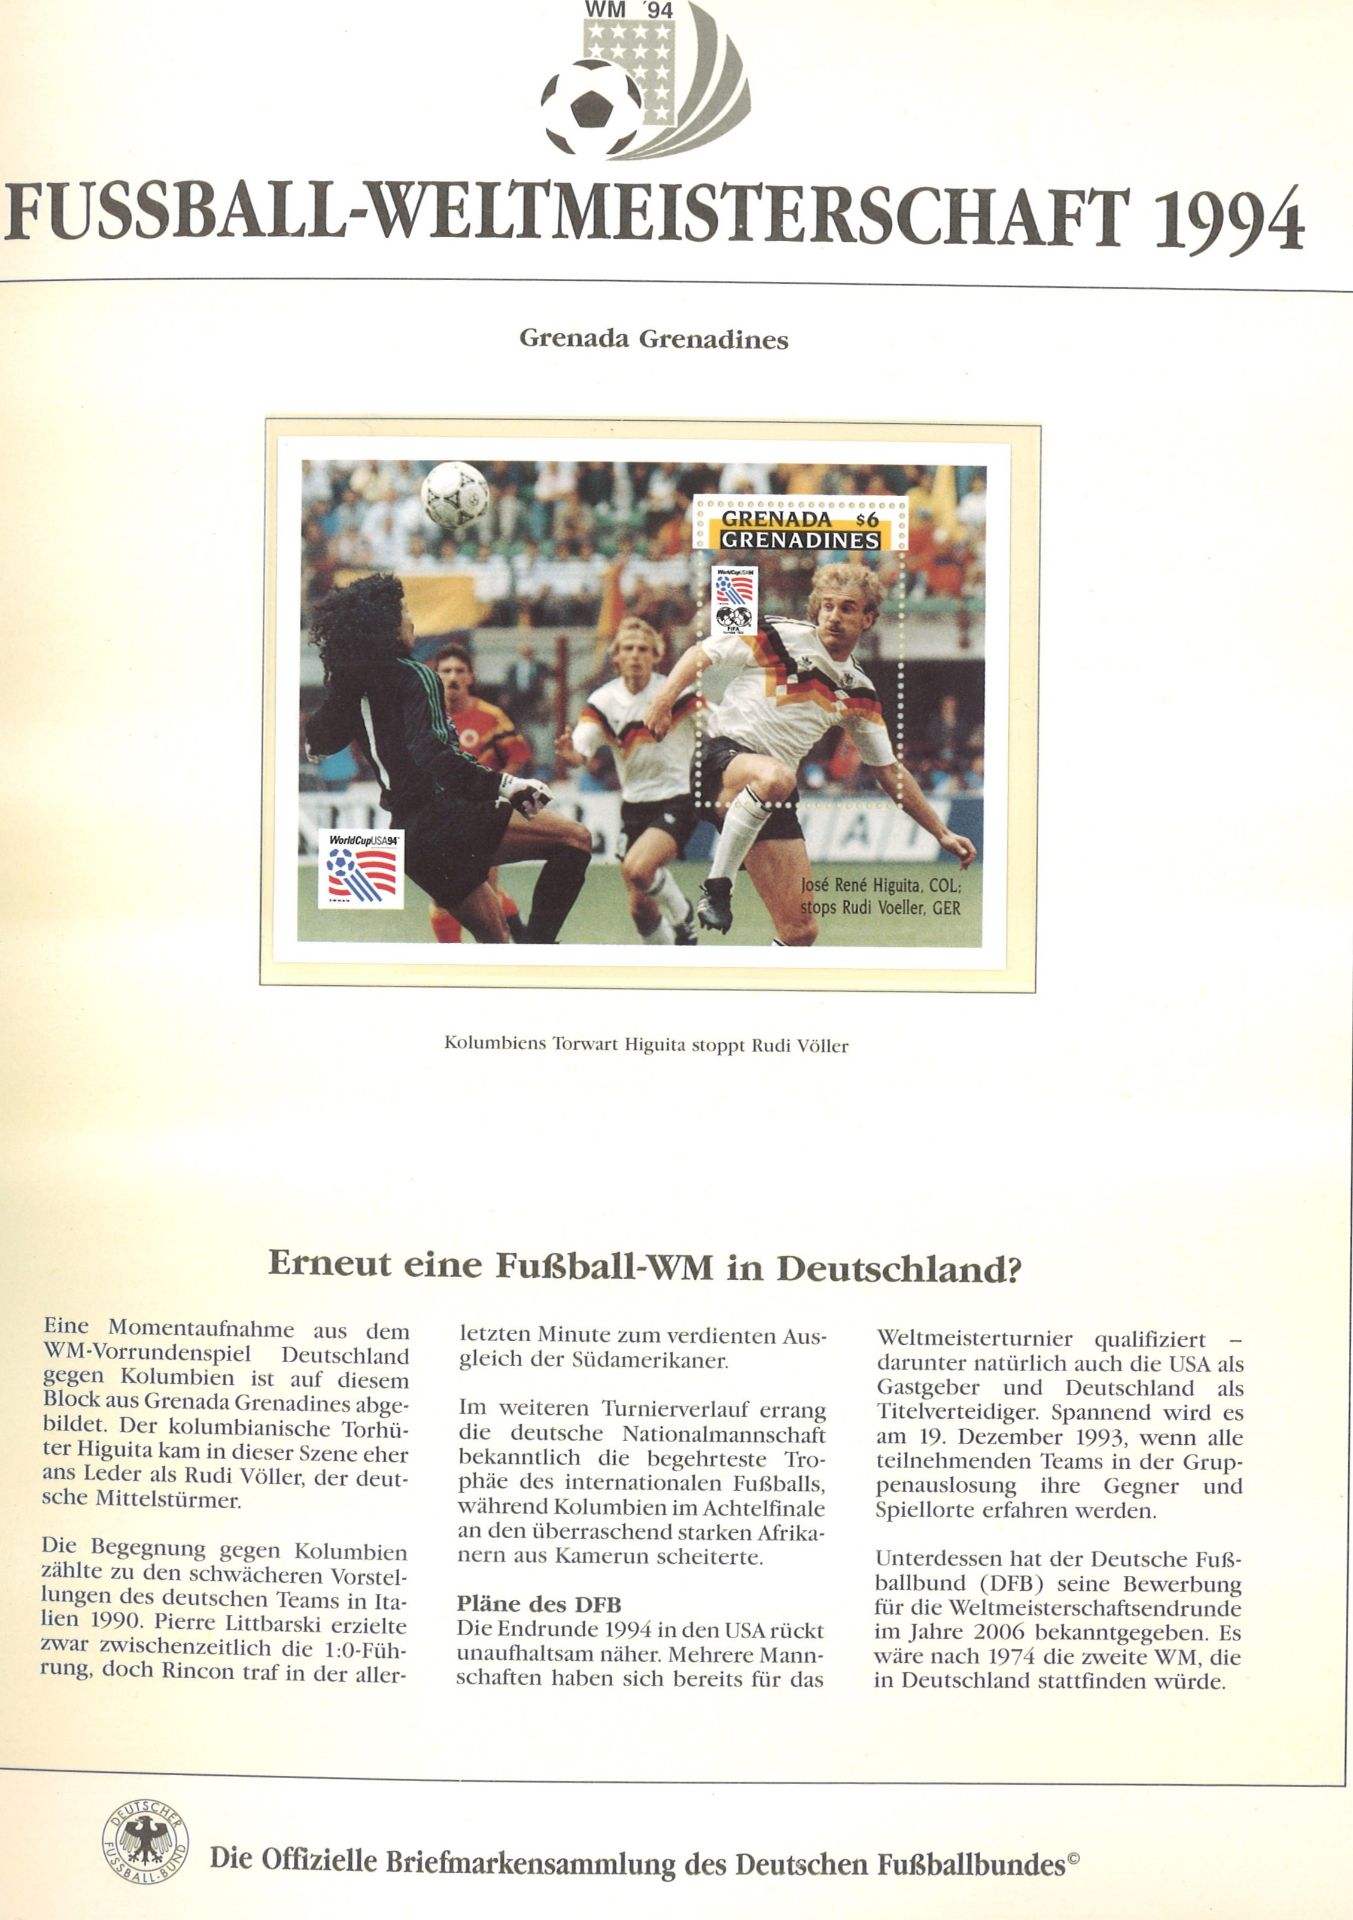 Vordruckalbum "Die offizielle Briefmarkensammlung des Deutschen Fußballbundes" im Binder-Borek